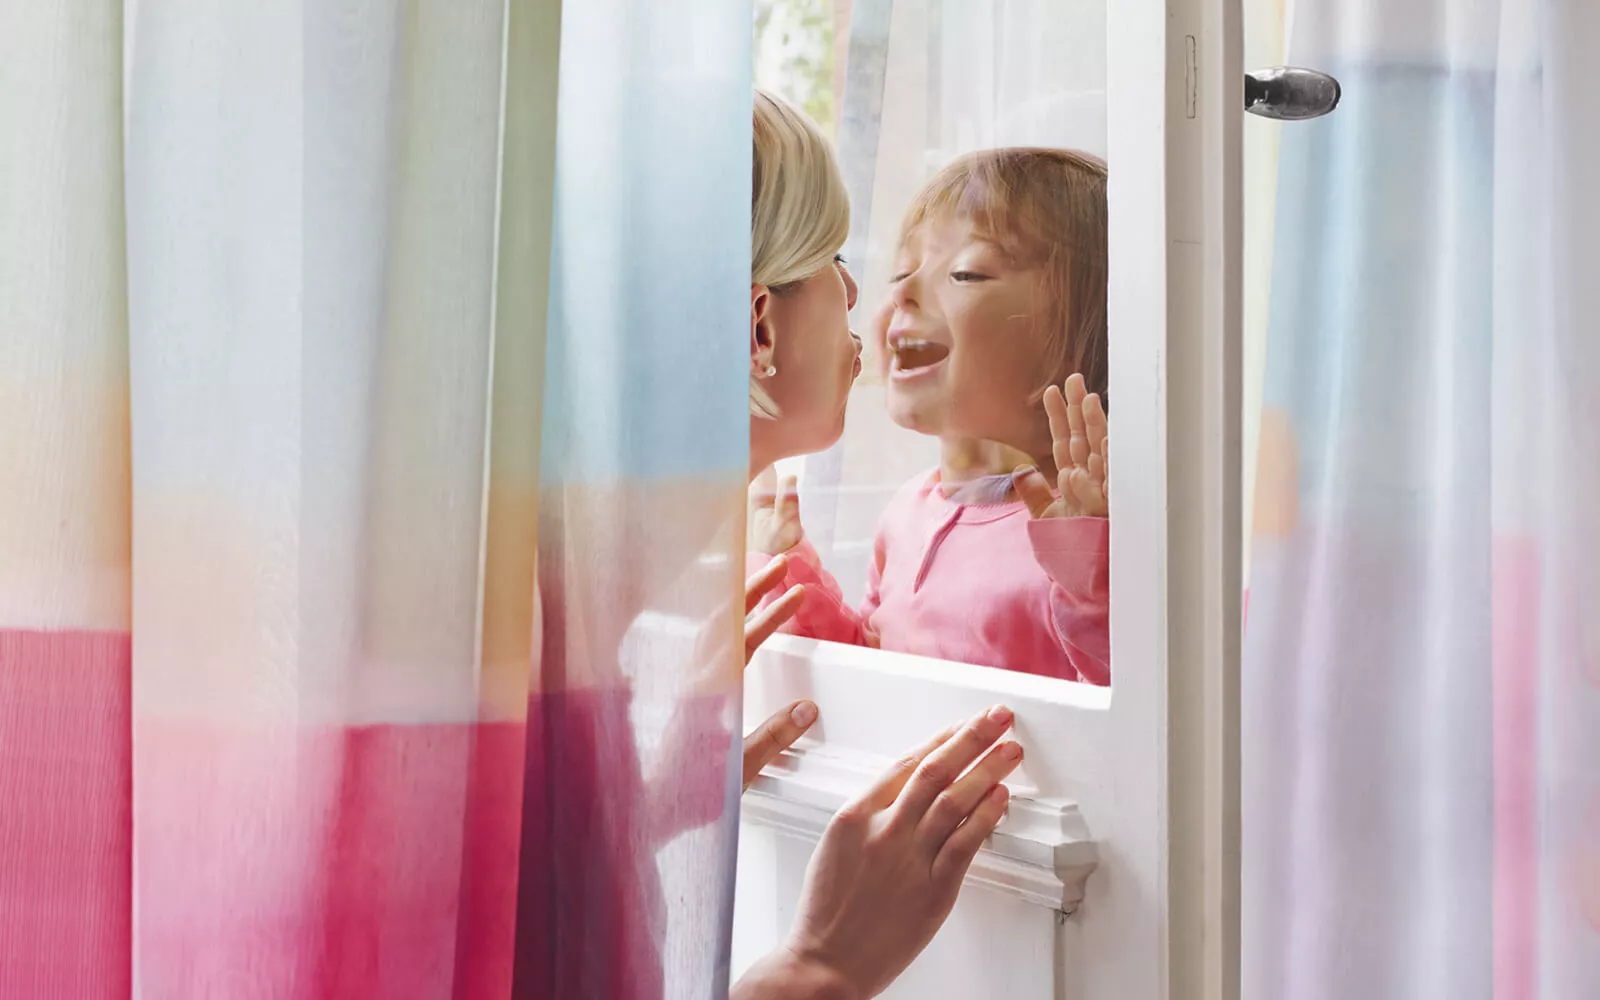 Interaktion zwischen Mutter und Kind durch eine Fensterscheibe, umrahmt von farbigen Gardinen in Weiß, Orange und Pink